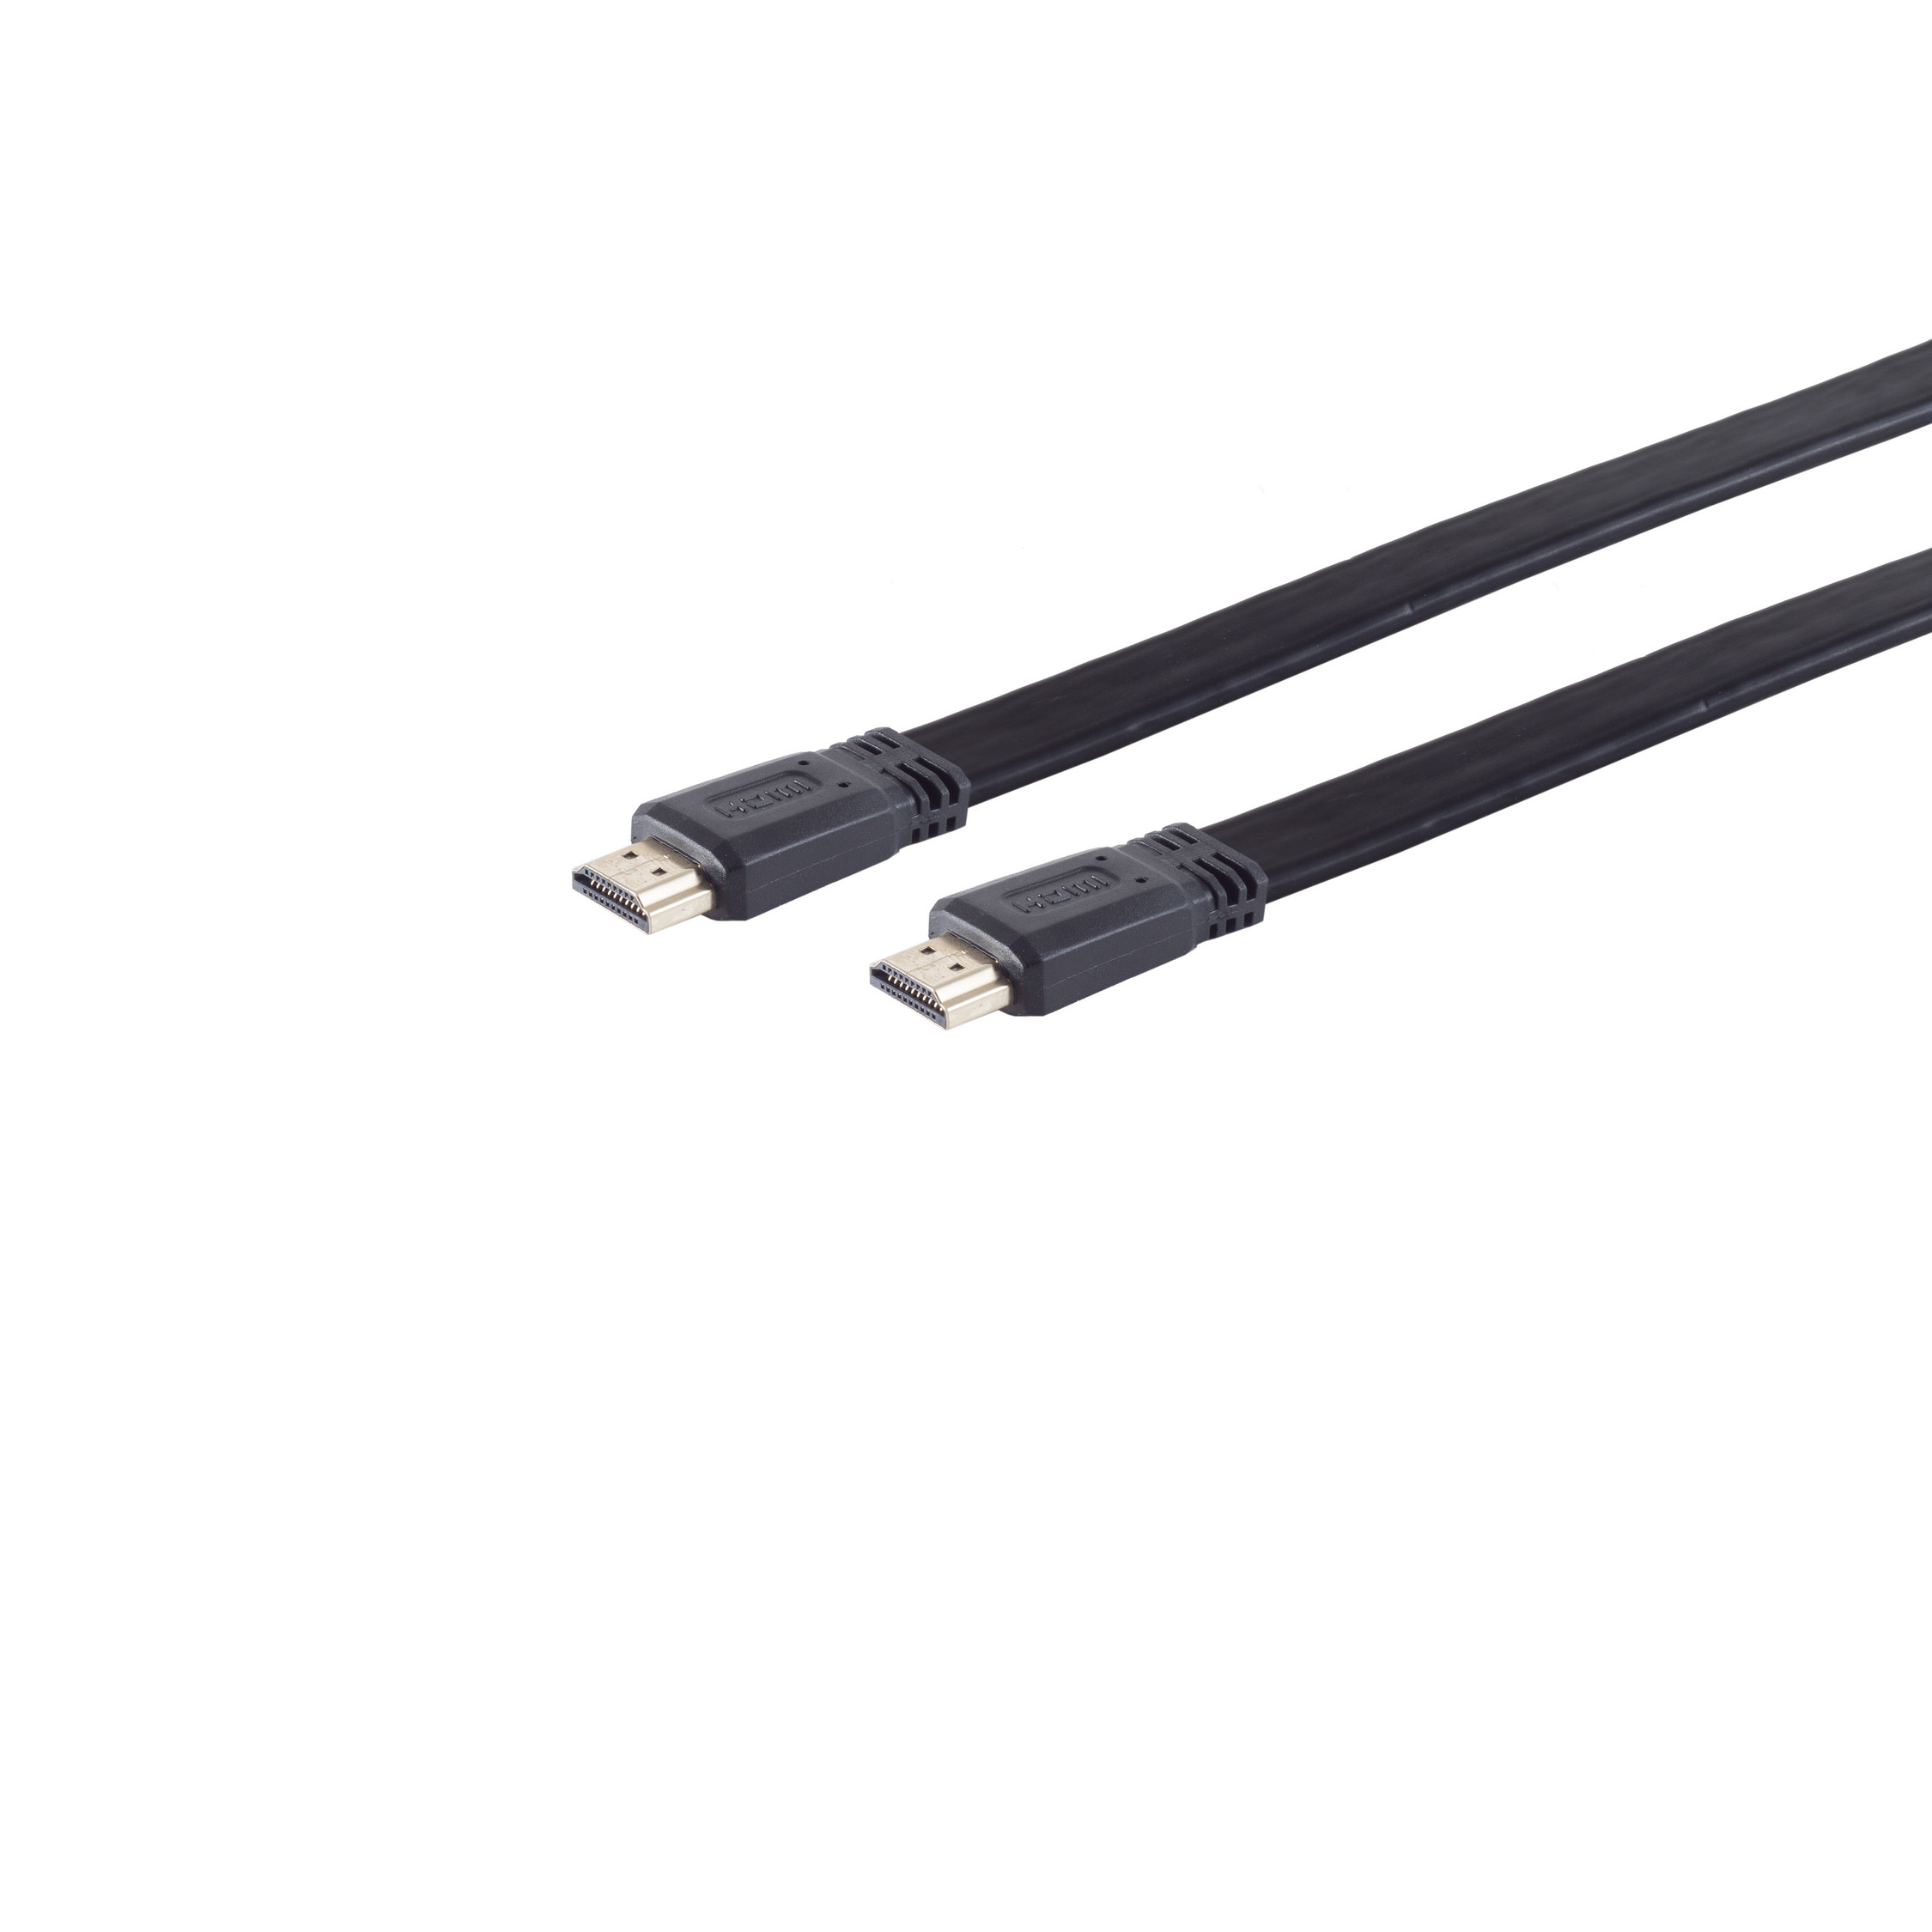 A-St / MAXIMUM CONNECTIVITY S/CONN Kabel verg. HDMI HEAC HDMI FLACH HDMI 5m A-St.